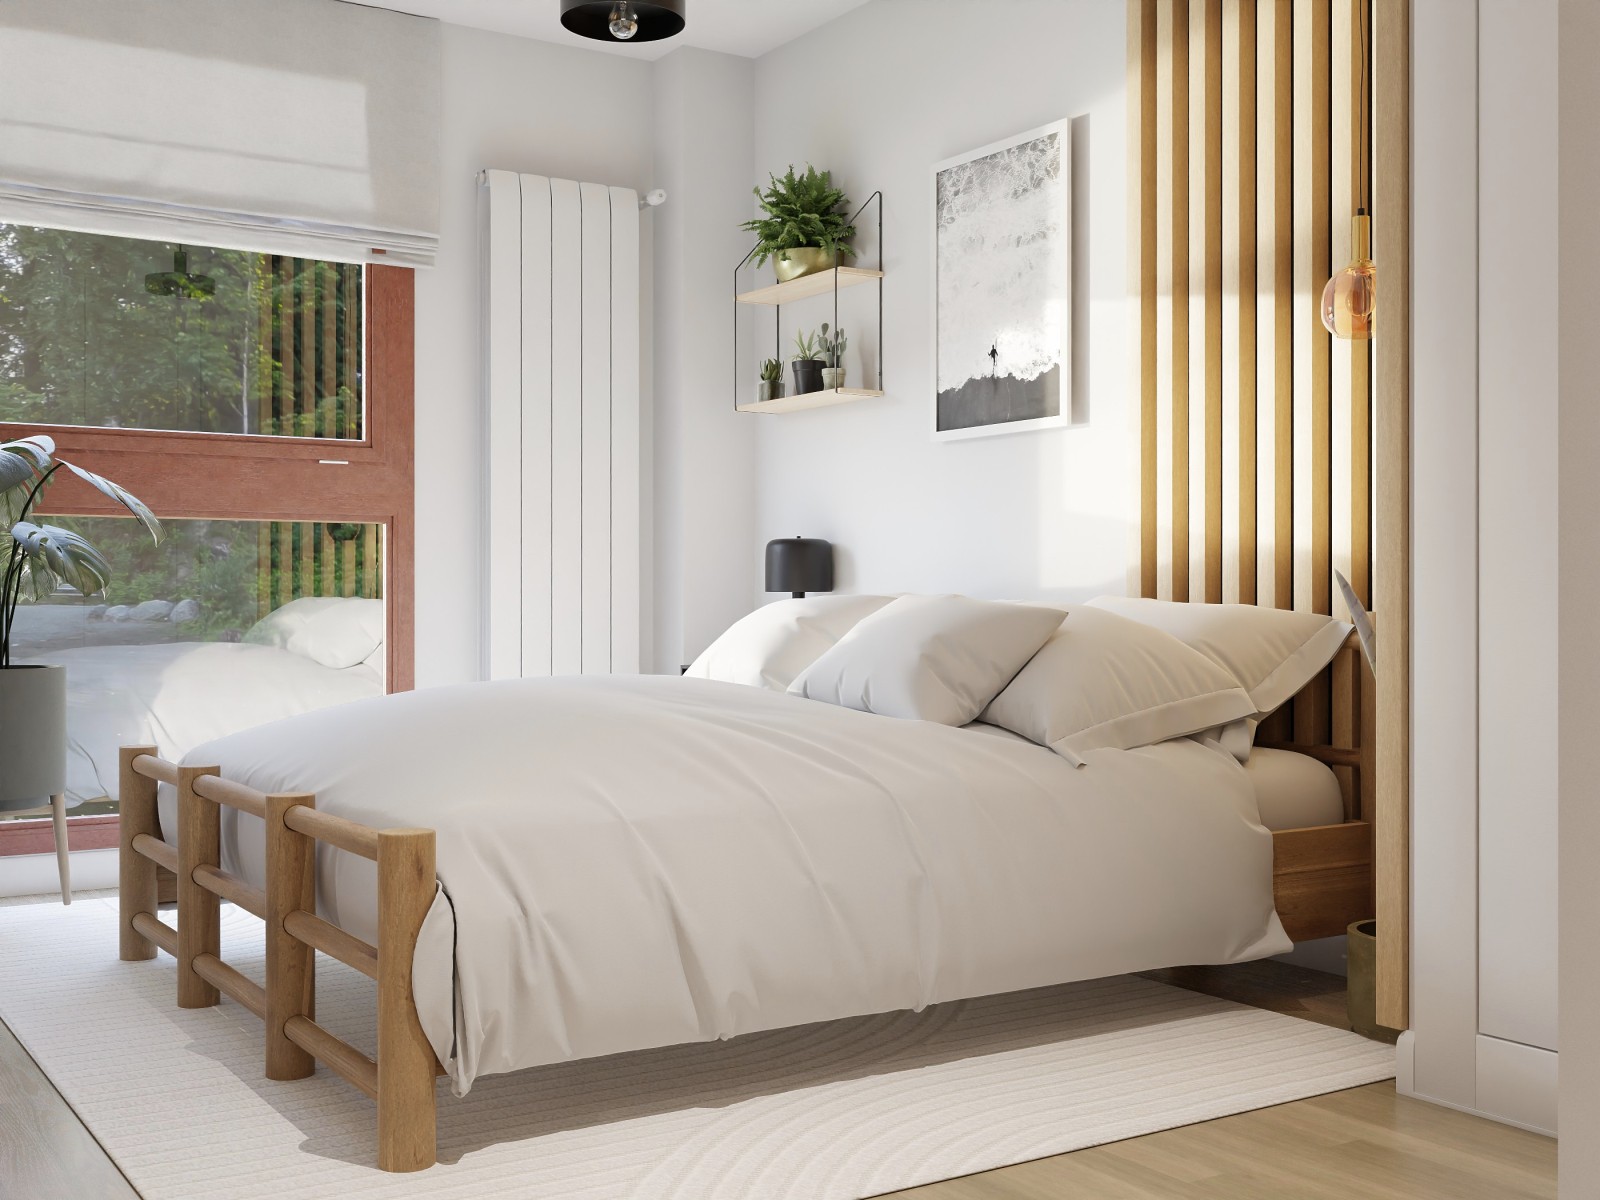 Dormitorio rústico con listones de madera 